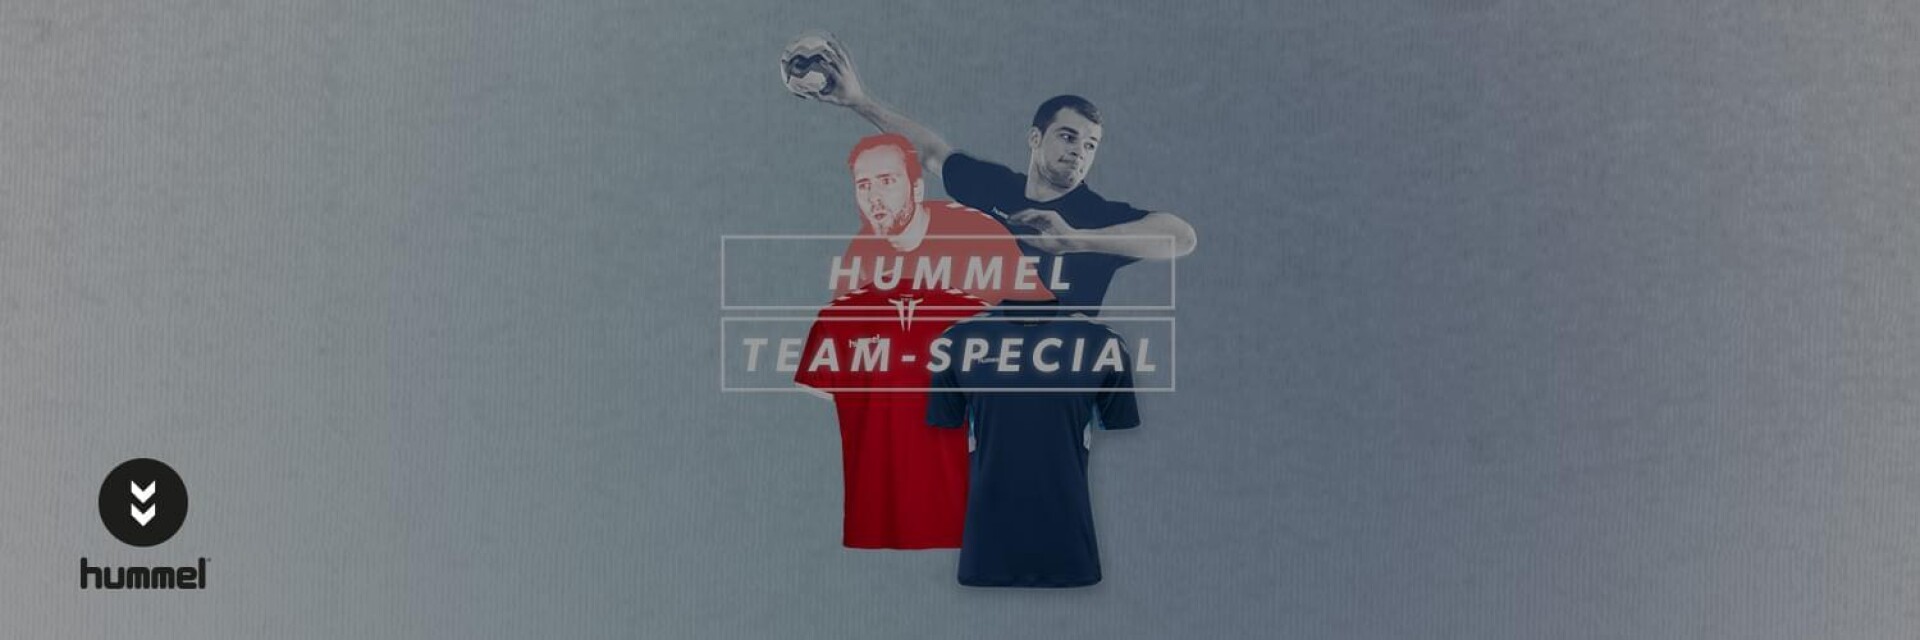 hummel Team-Special